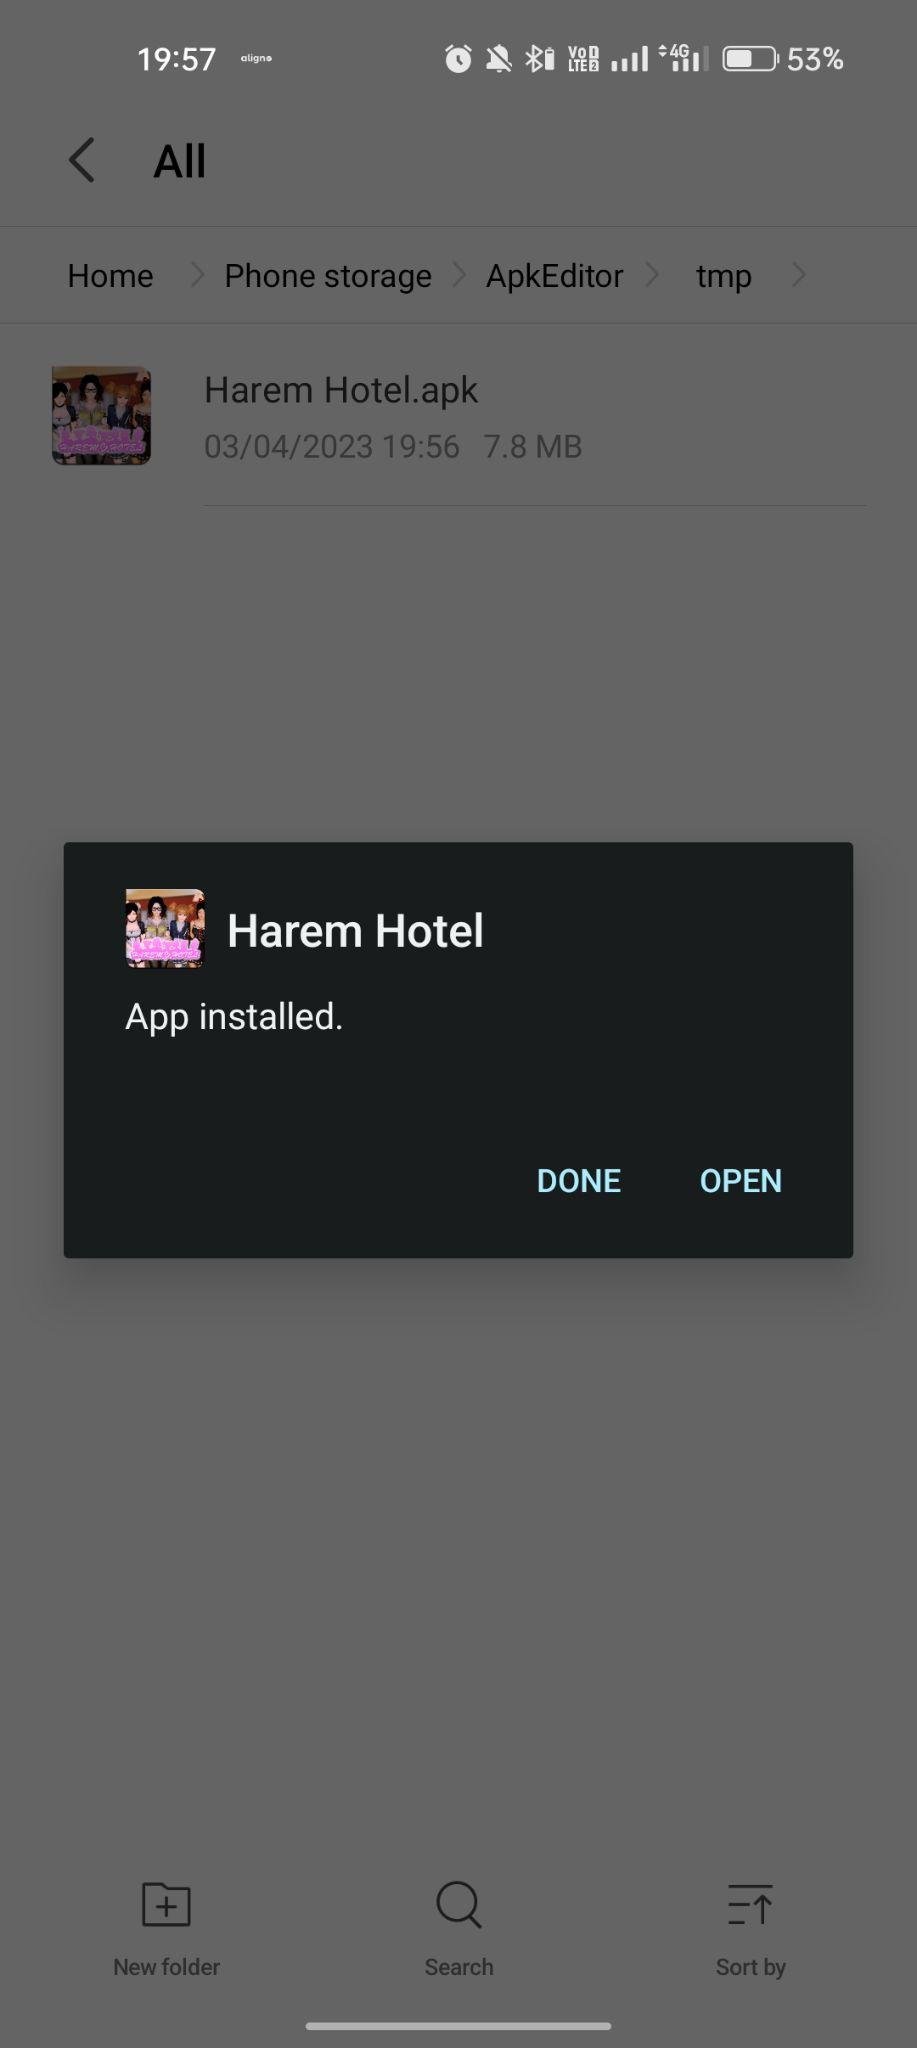 Harem Hotel apk installed